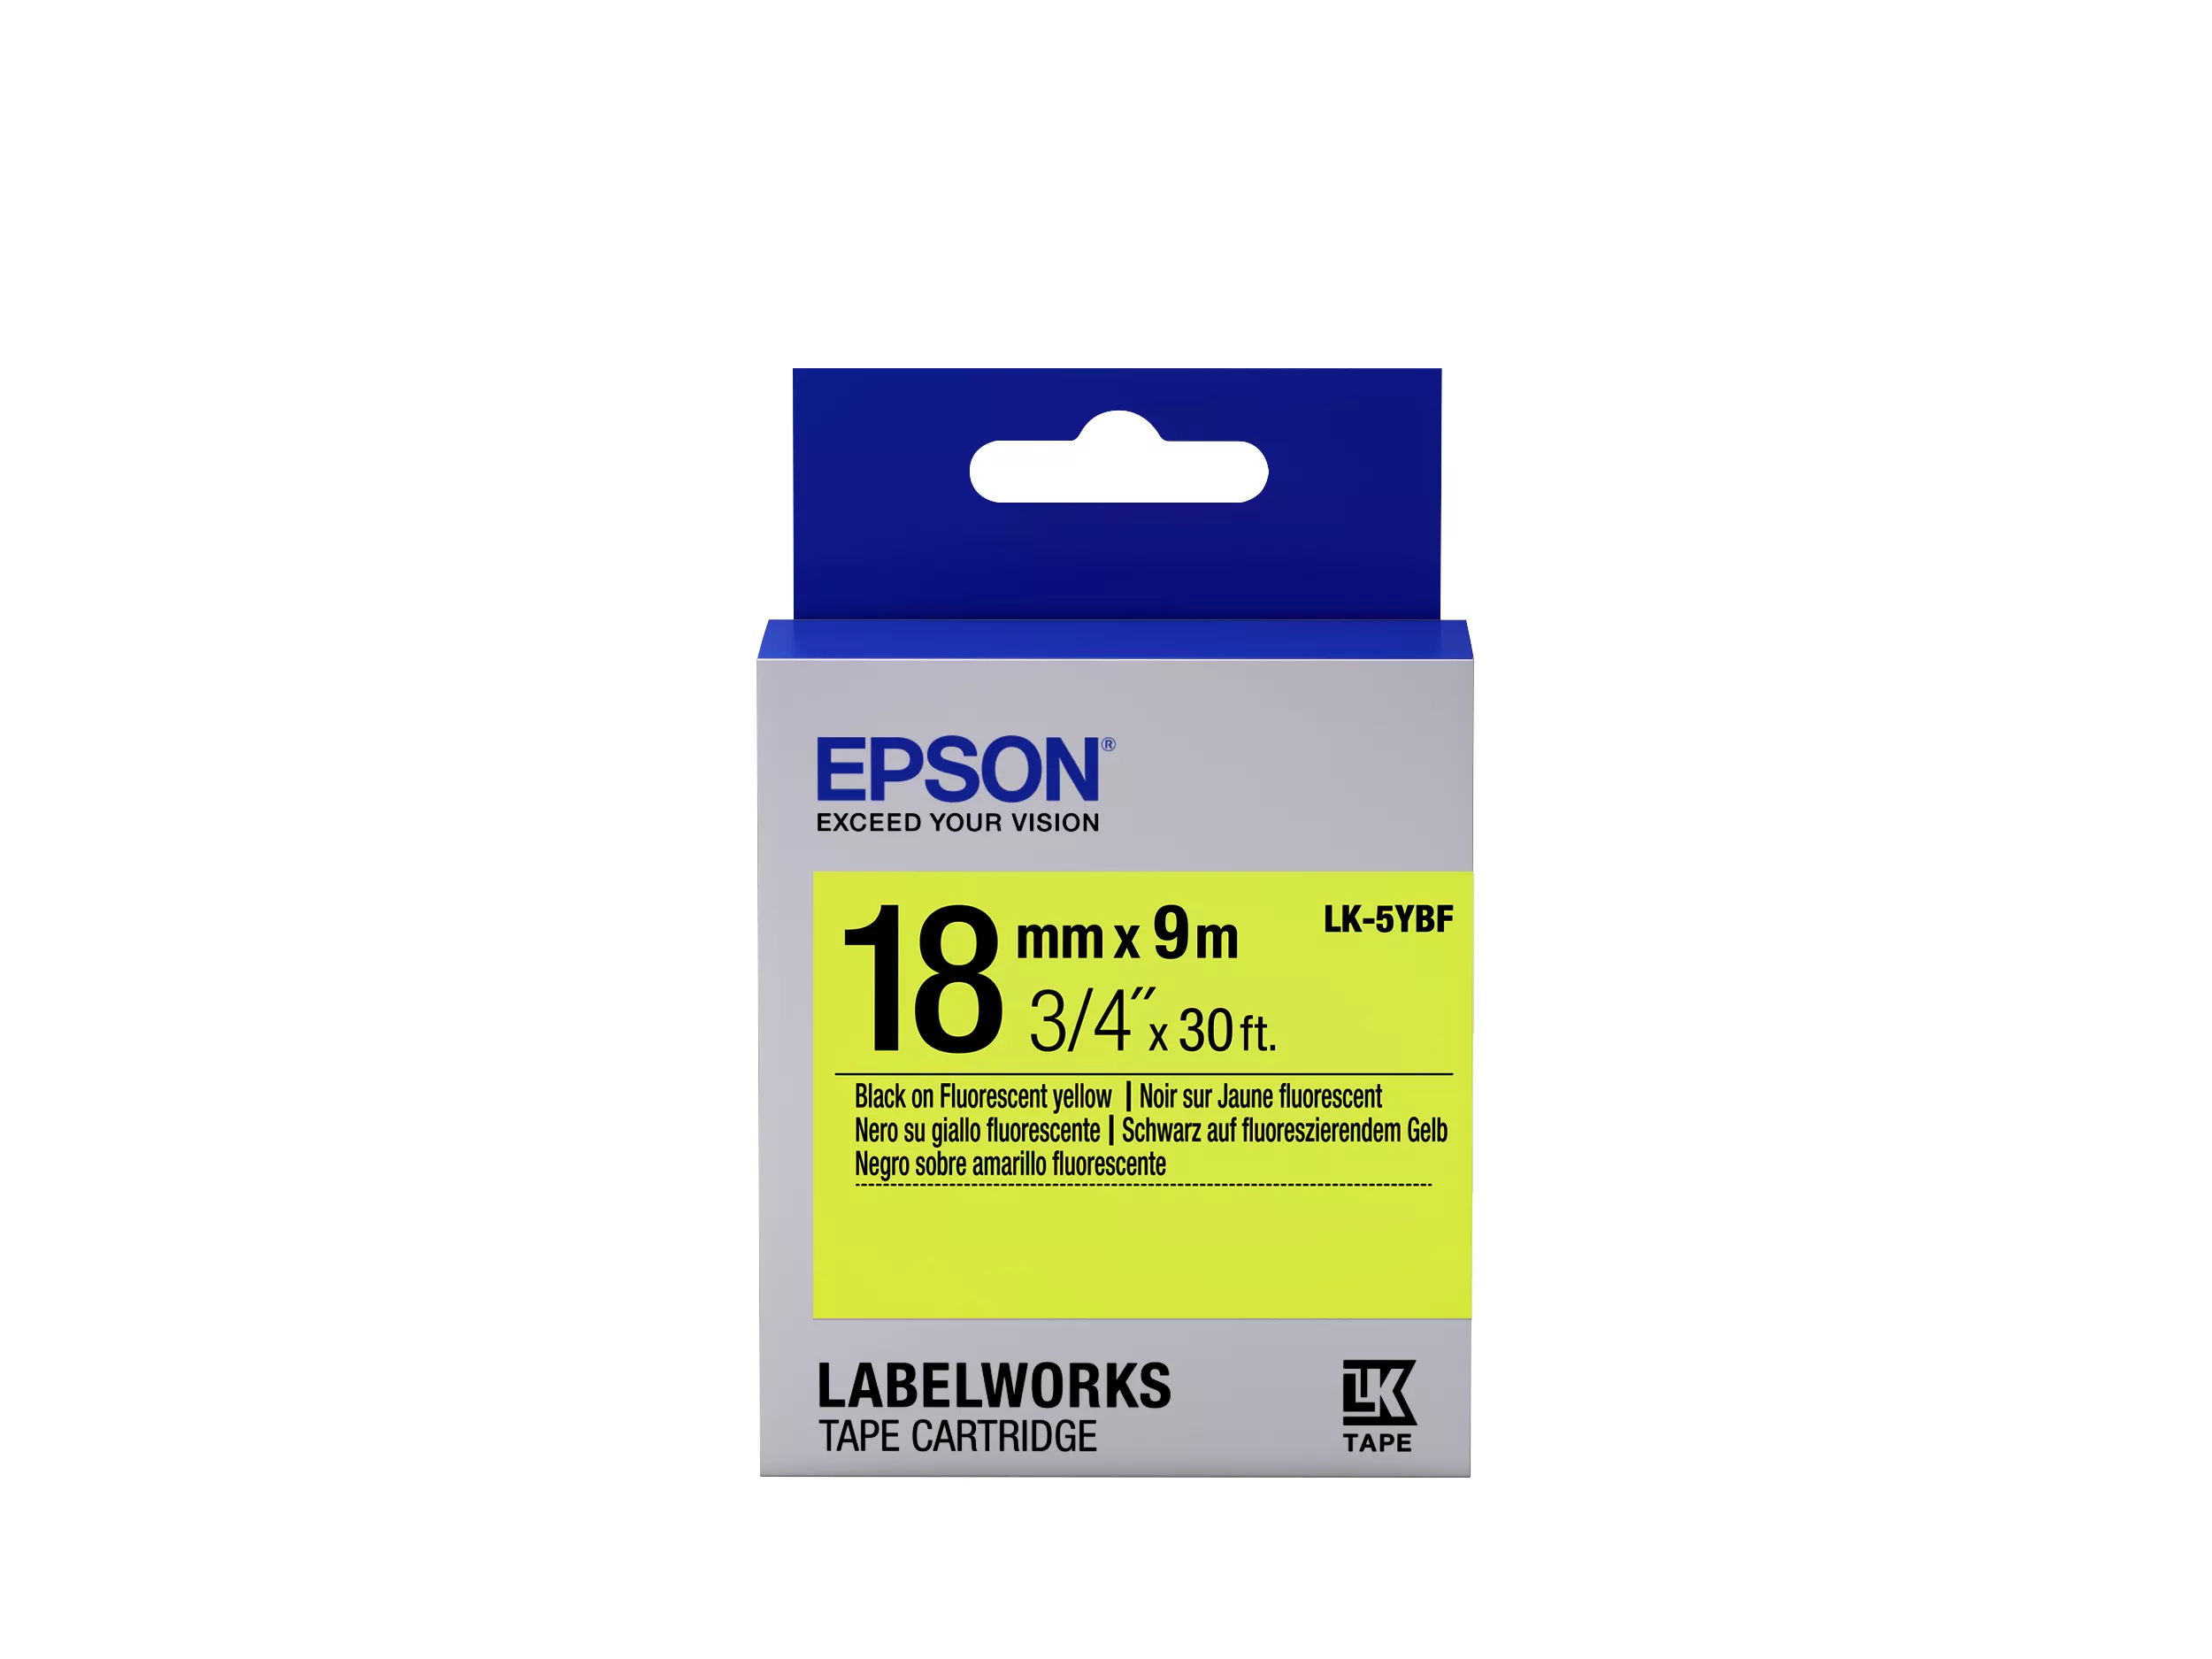 Vente EPSON LK-5YBF Fluorescent Noir/Jaune au meilleur prix